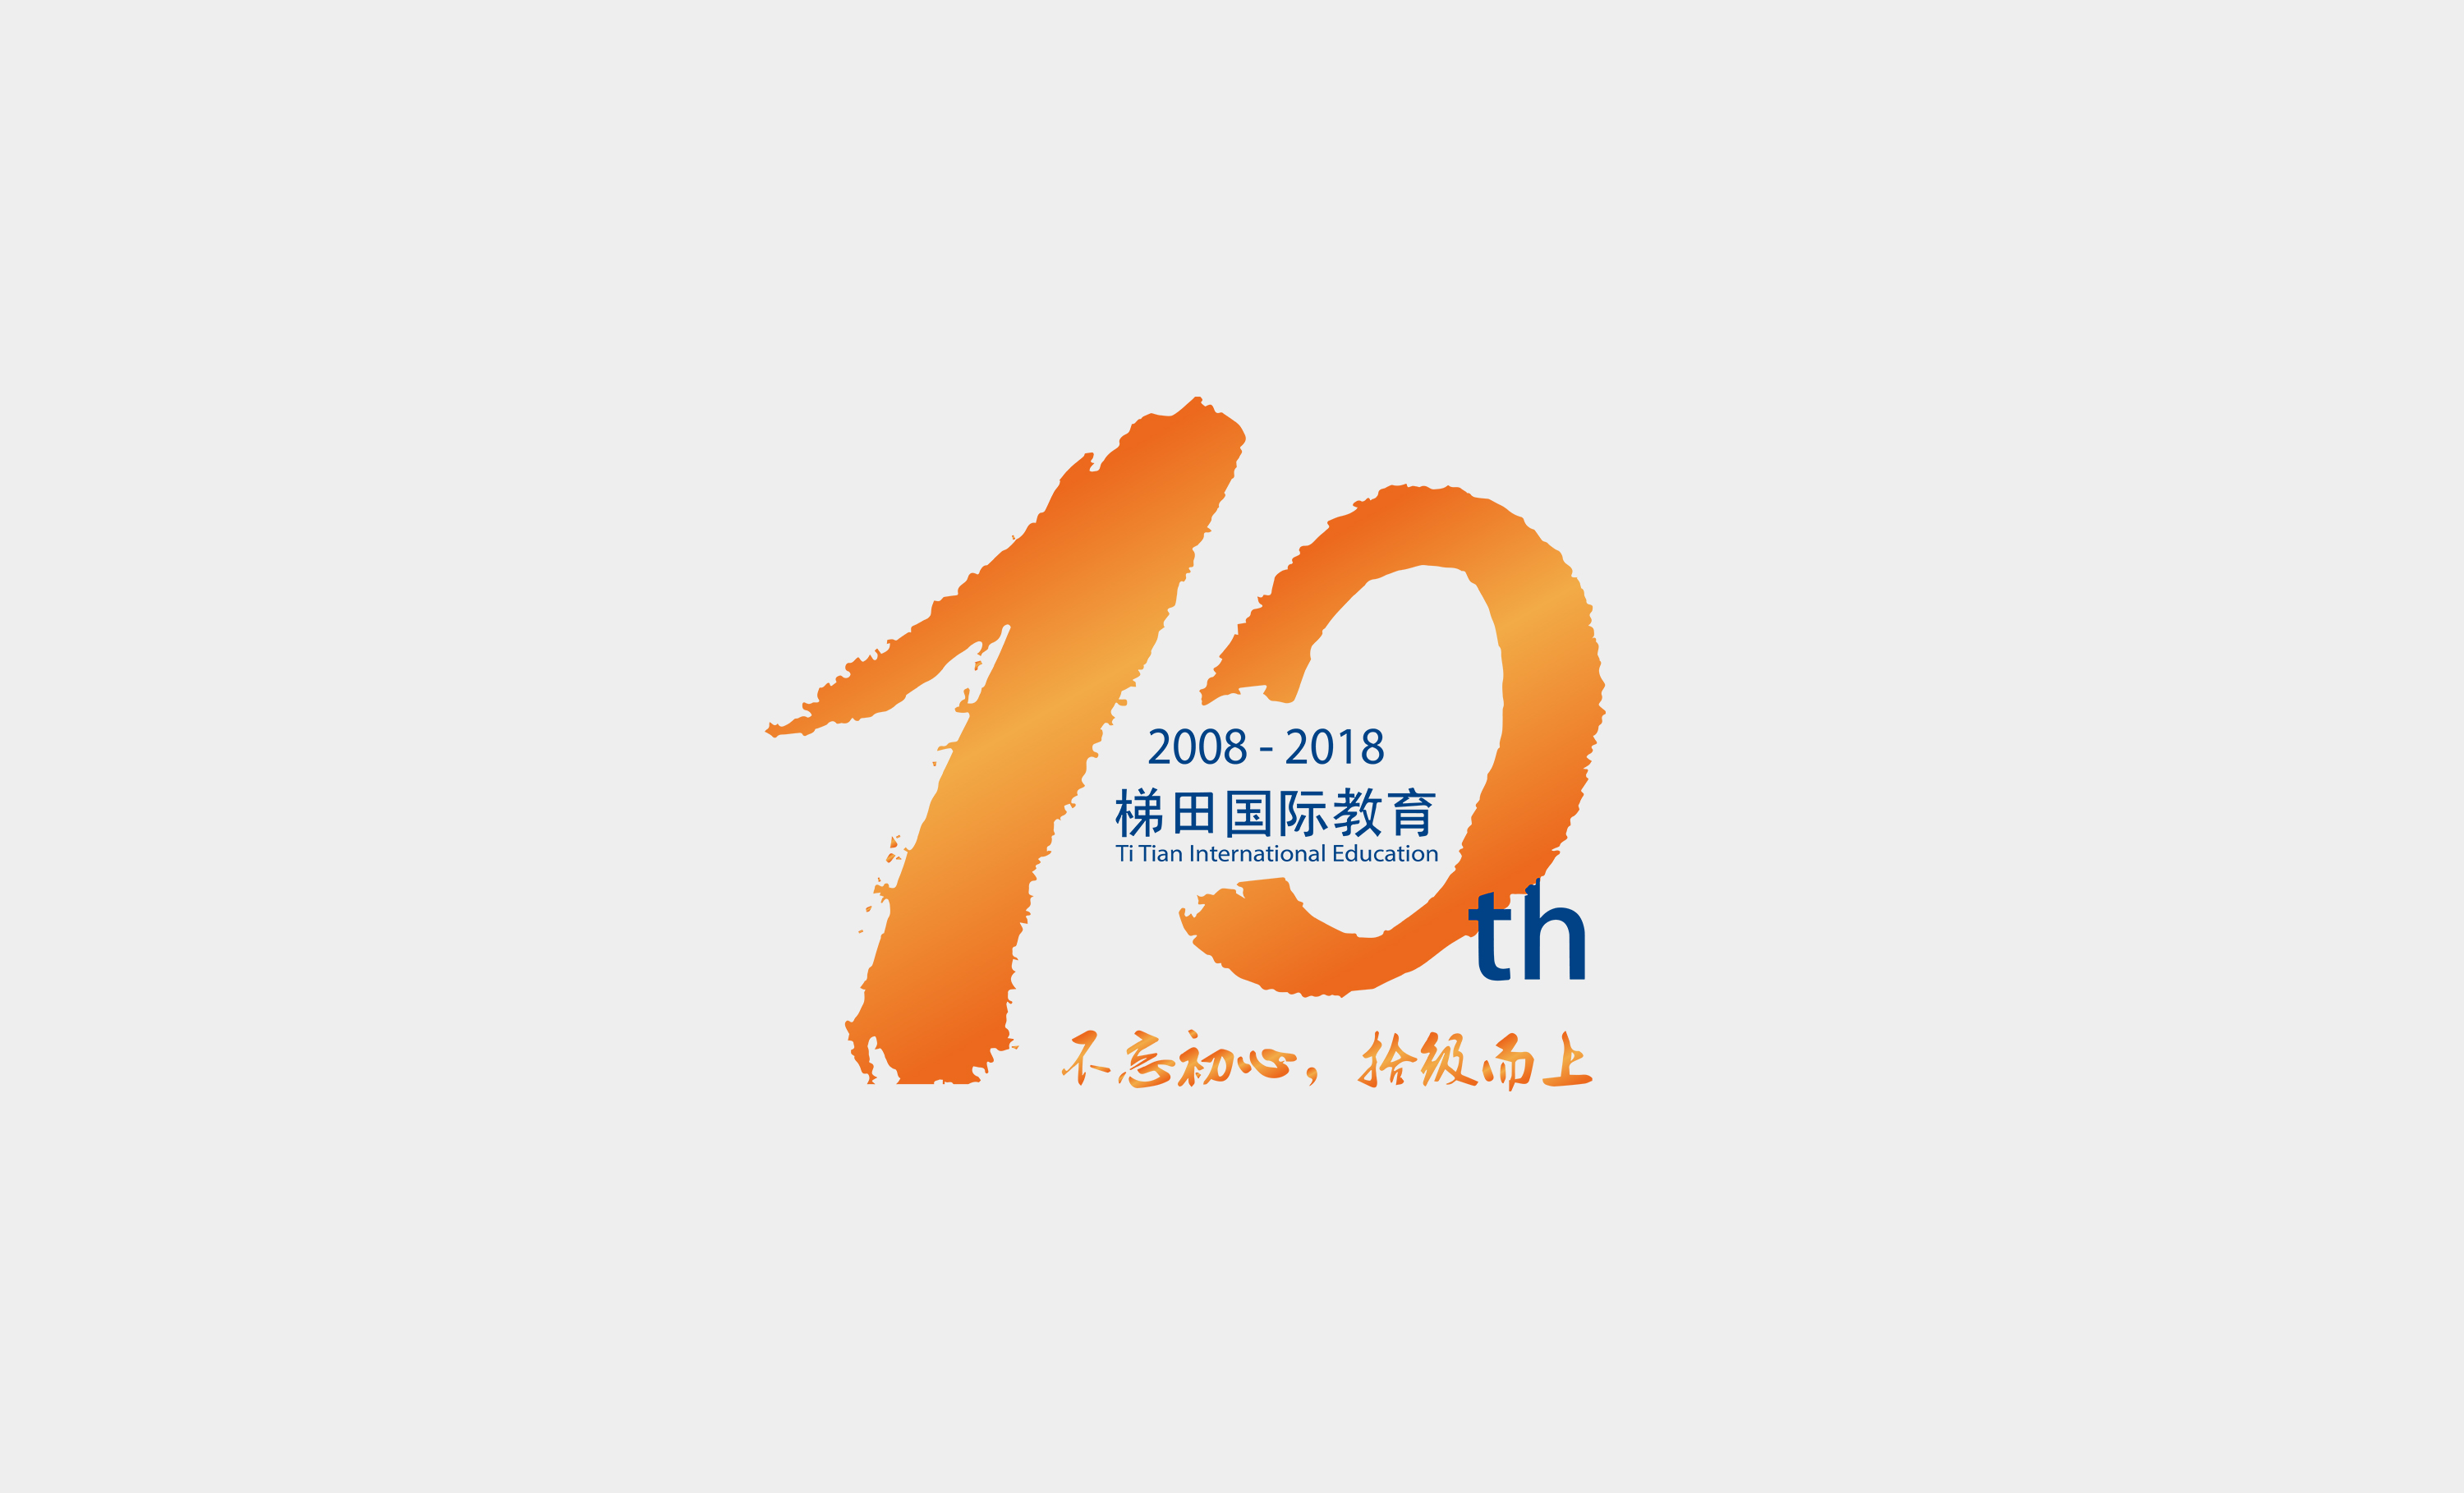 梯田国际教育10周年logo